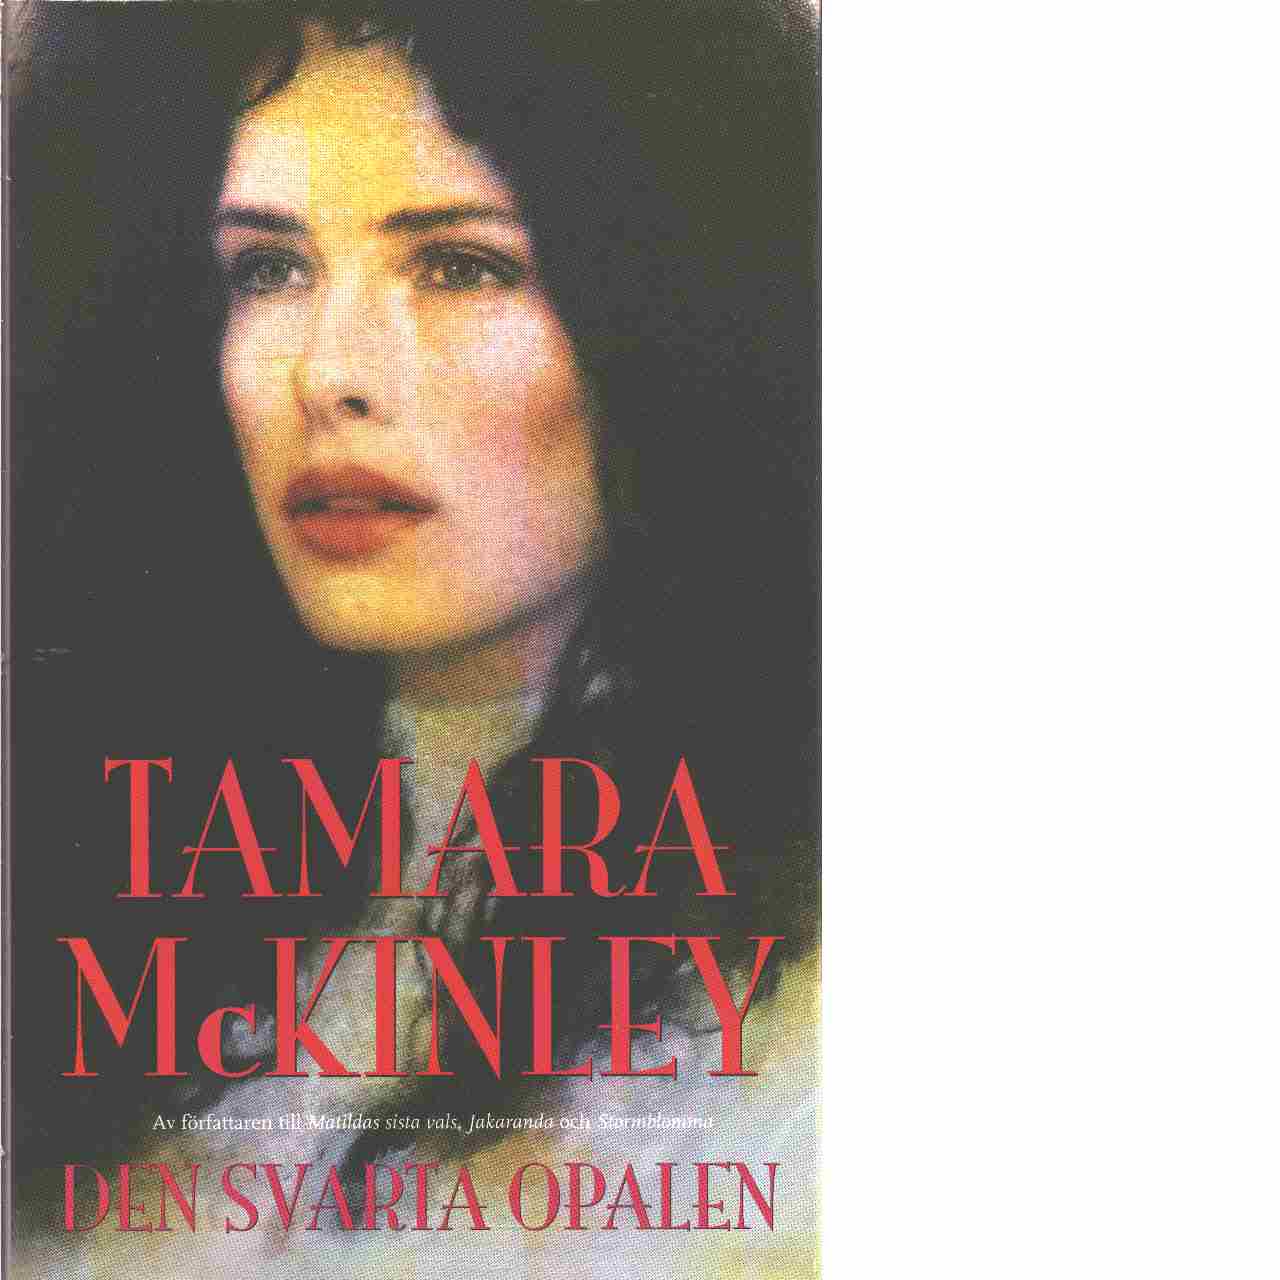 Den svarta opalen - Mckinley, Tamara